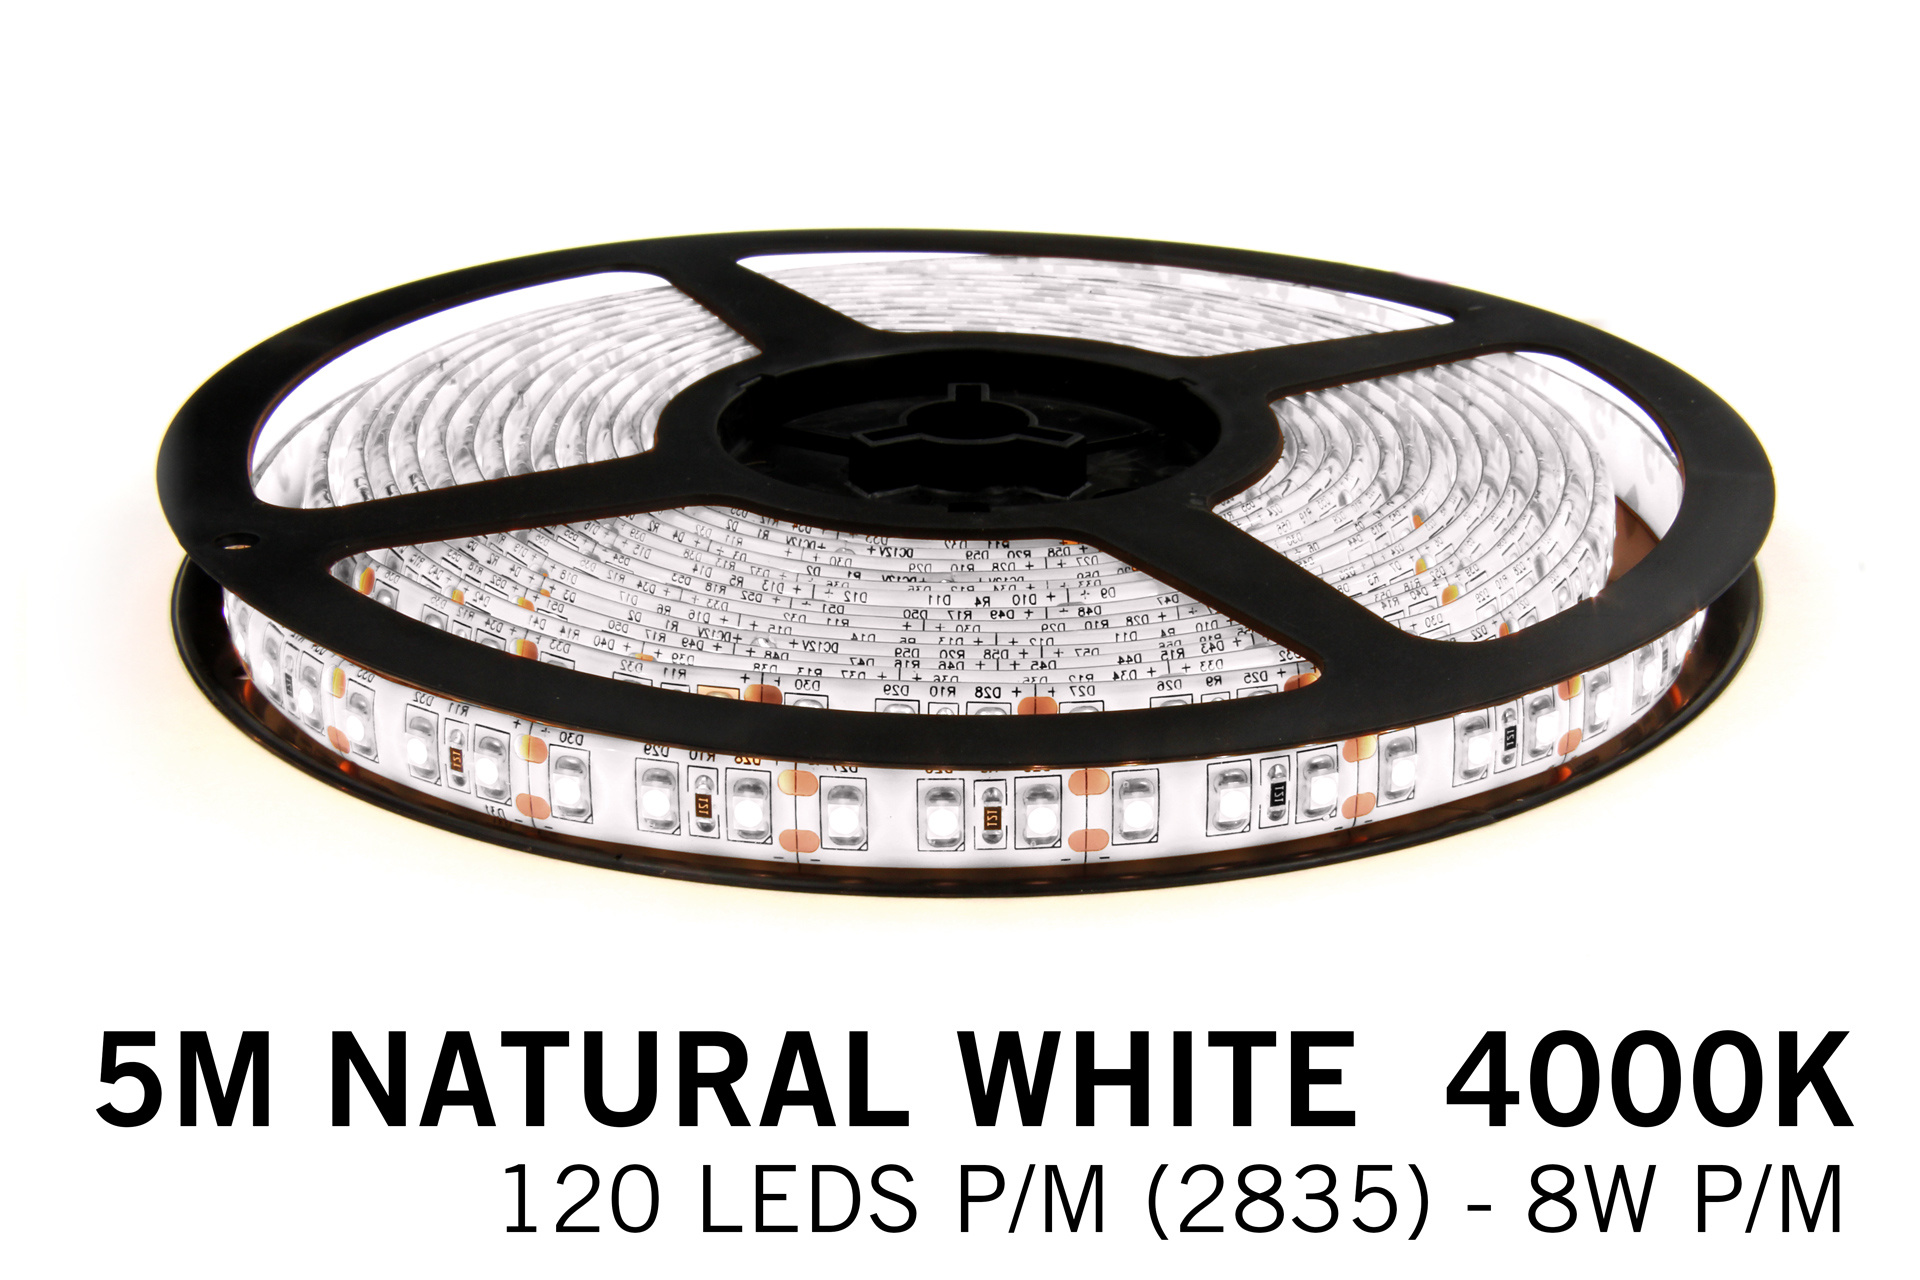 AppLamp Neutraal Witte LED strip 120 leds p.m. - 5M - type 2835- 12V - 8 W p.m.